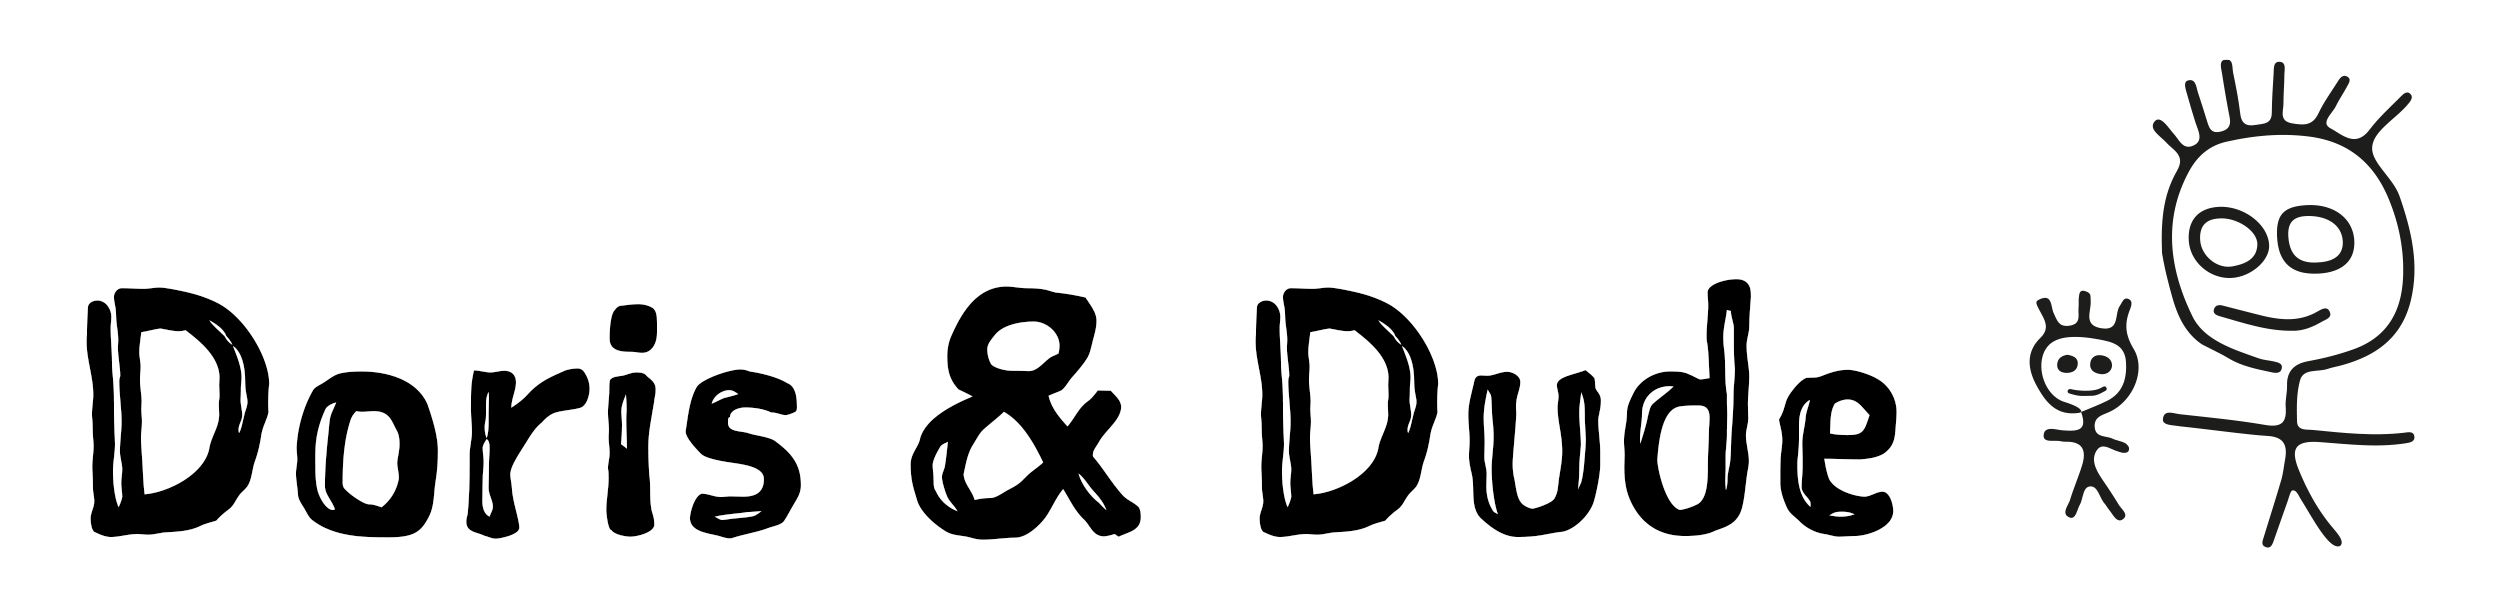 Doris & Dude